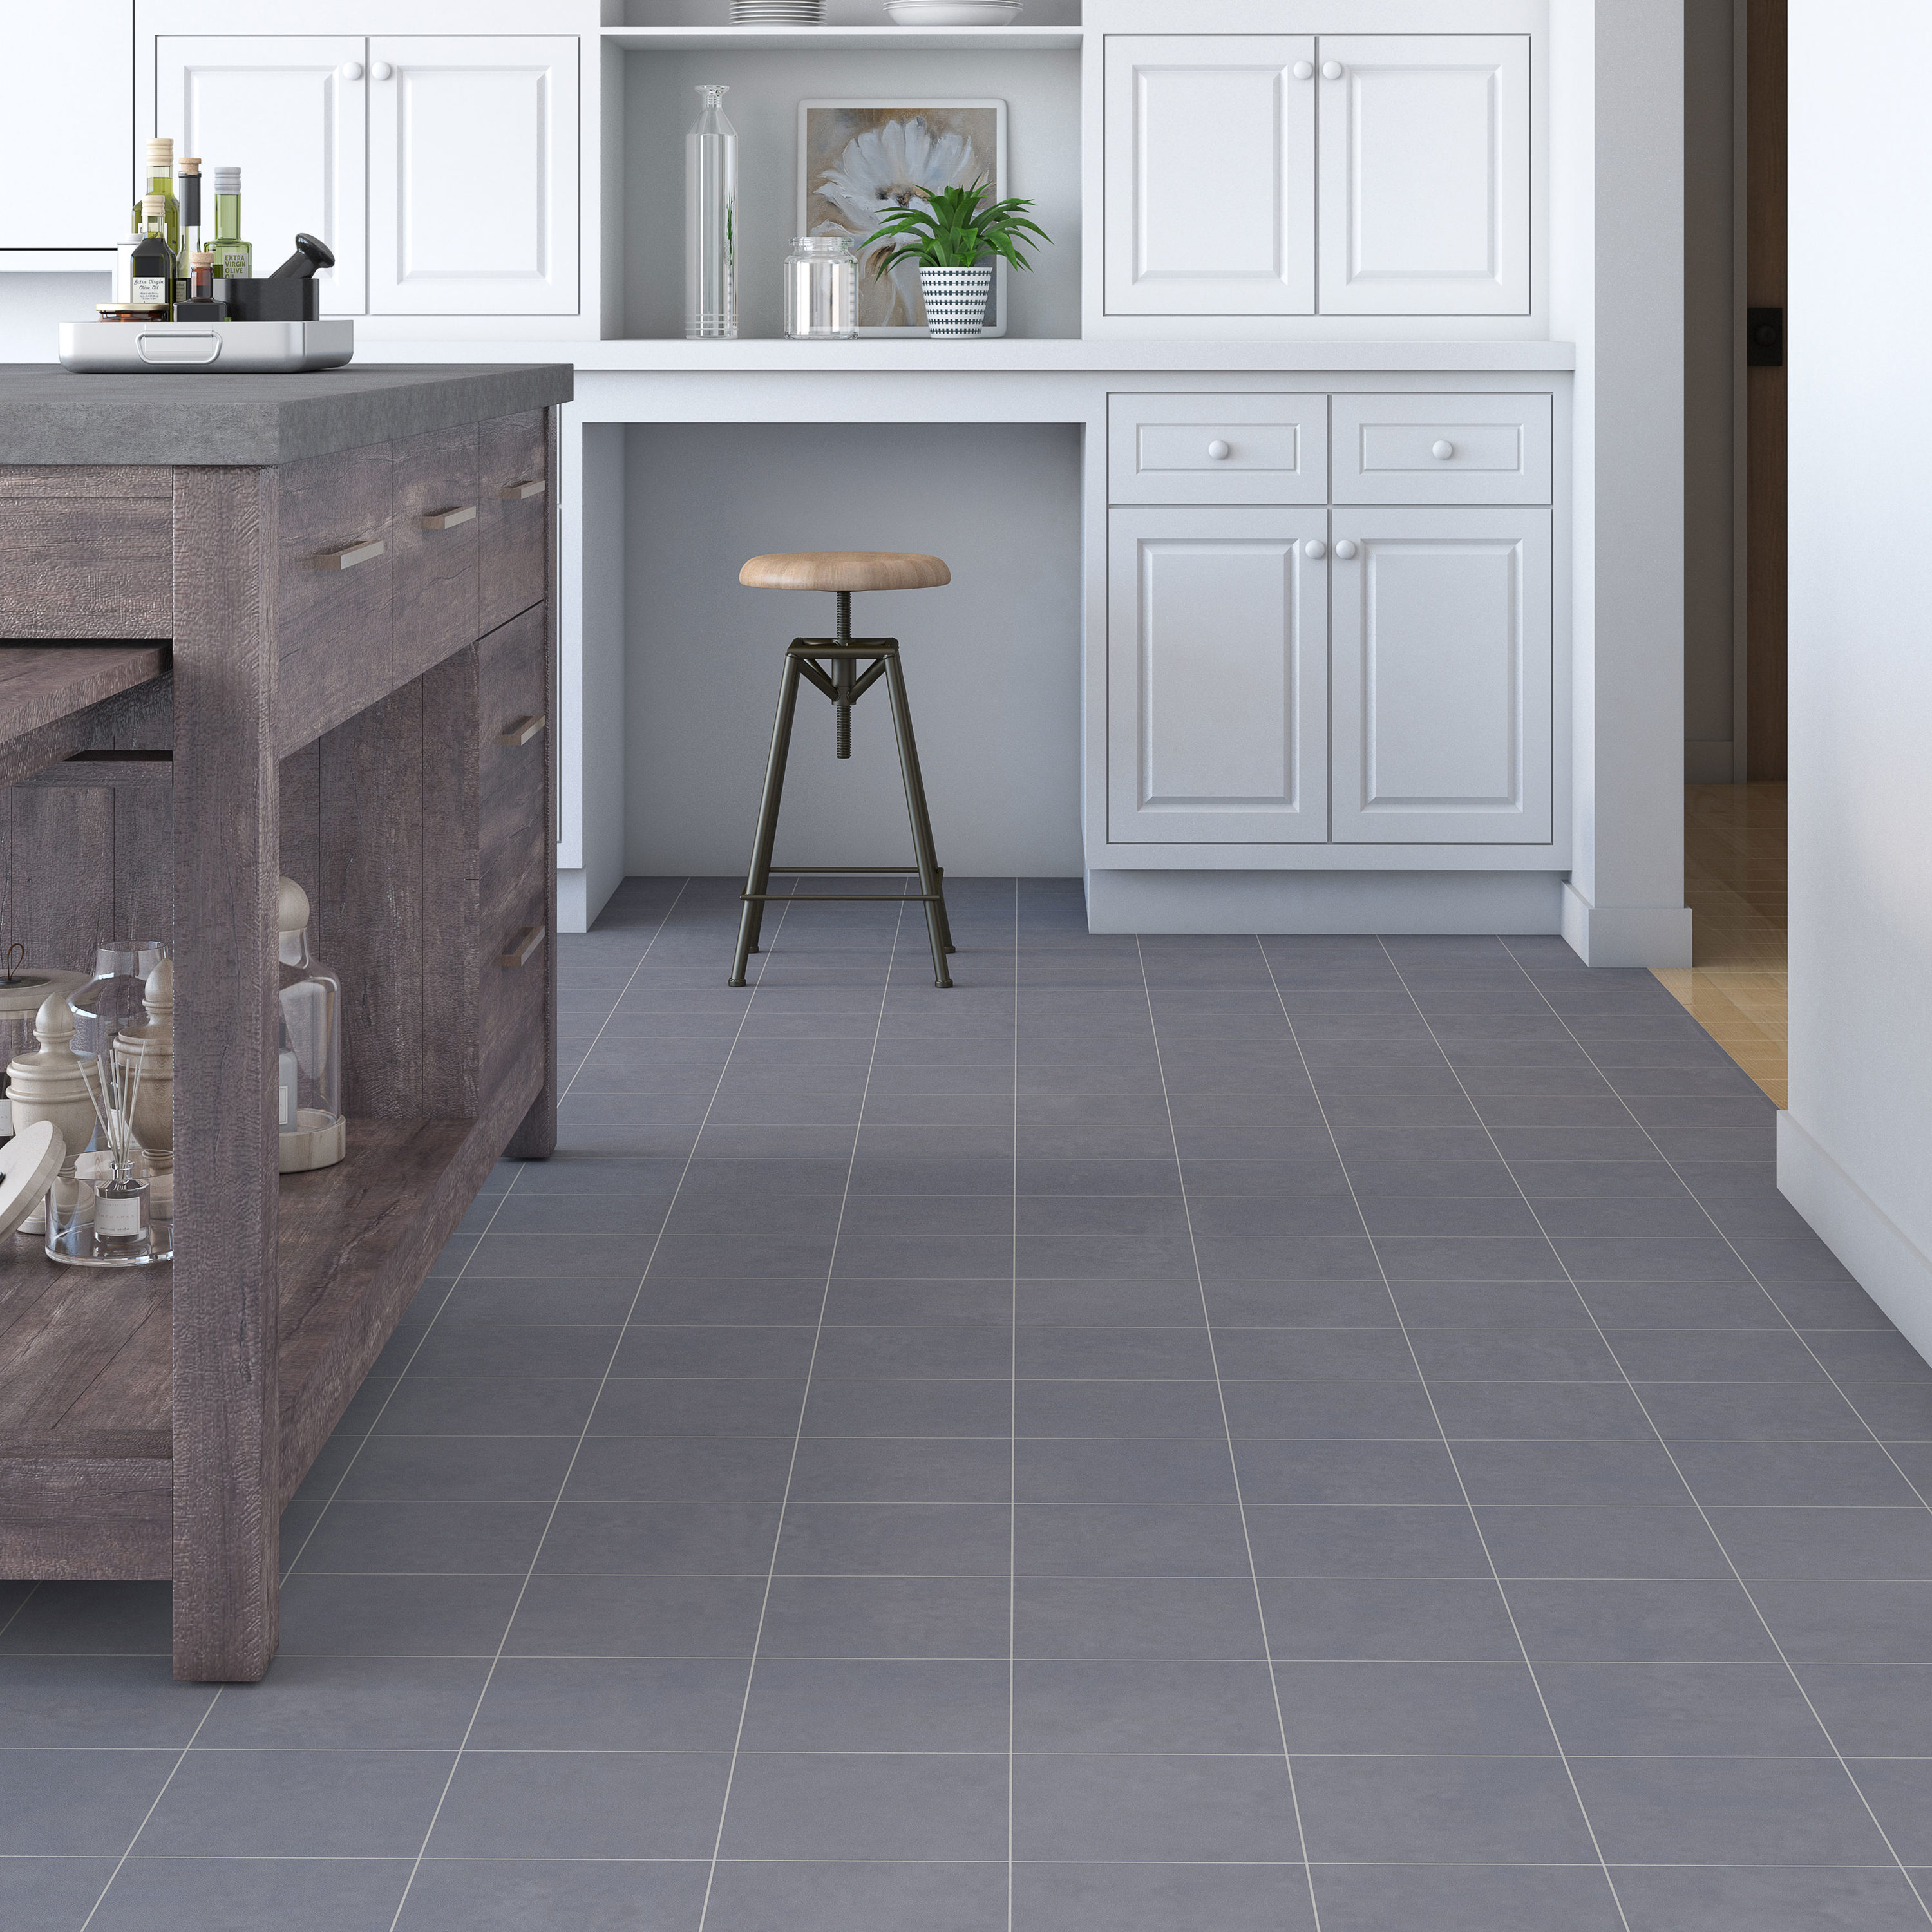 Kitchen Floor Tiles - All American Flooring - DFW's Favorite